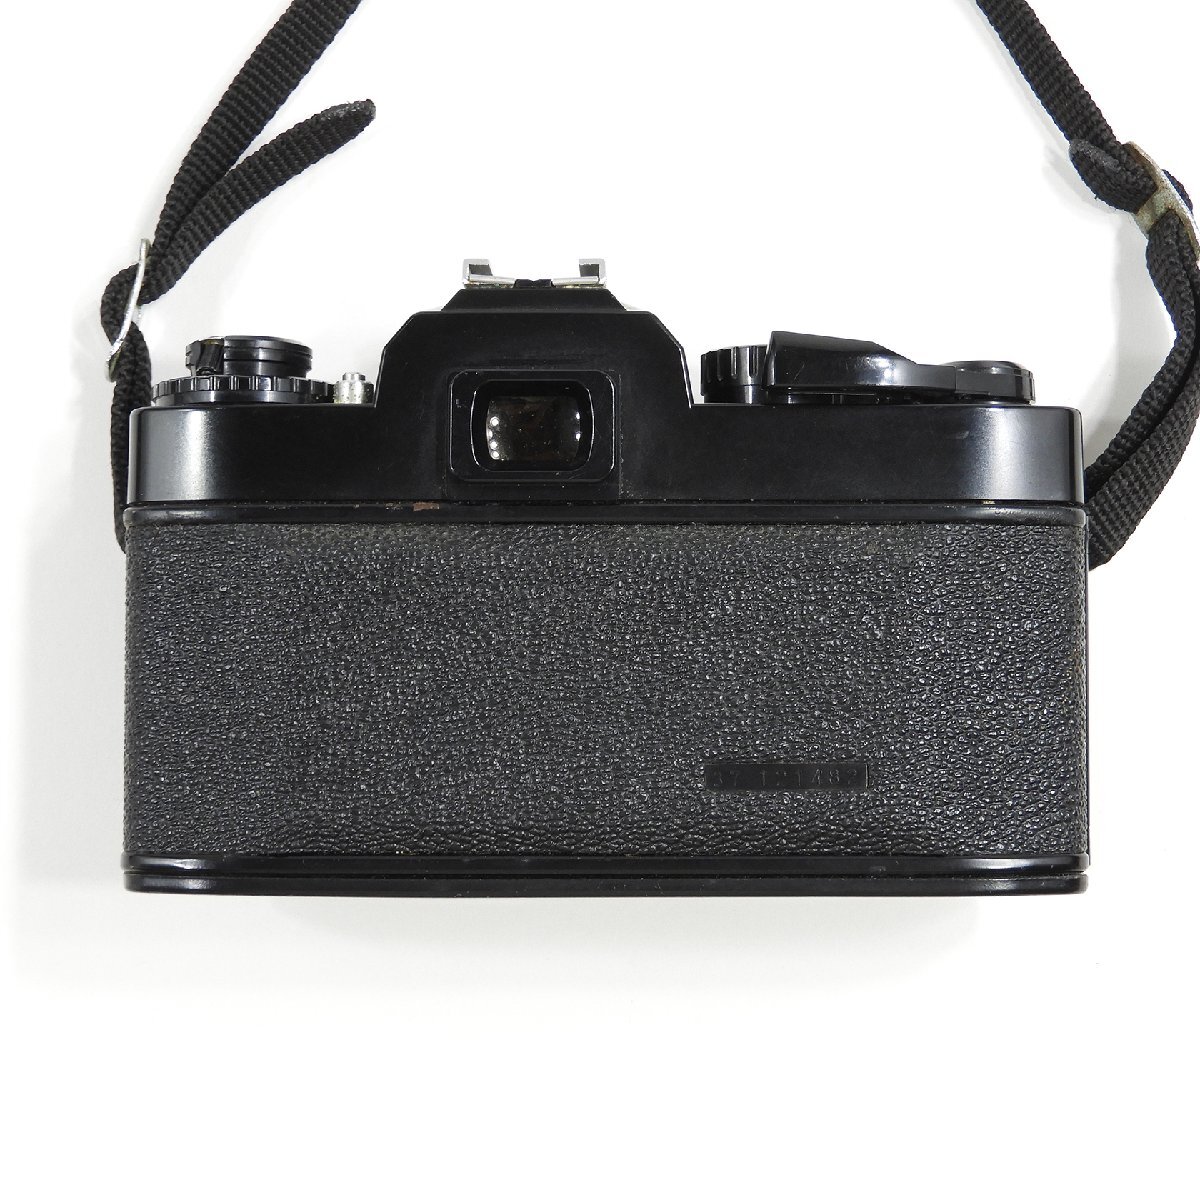 RICOH リコー XR500 ボディ ジャンク #17568 本体 フィルムカメラ 趣味 コレクション